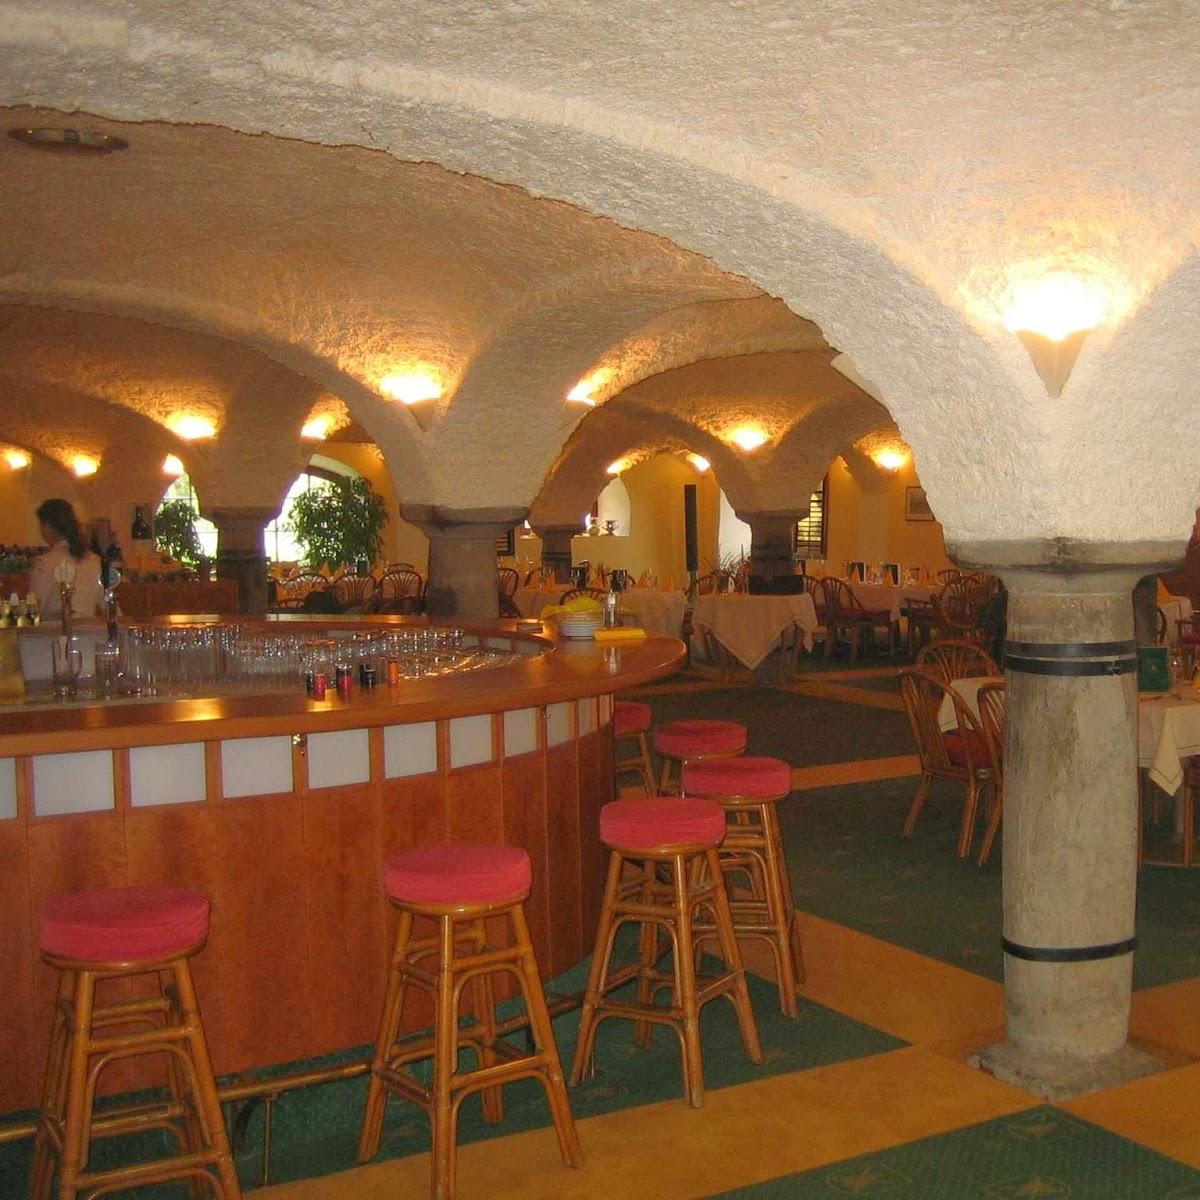 Restaurant "Restaurant Altentann" in Henndorf am Wallersee